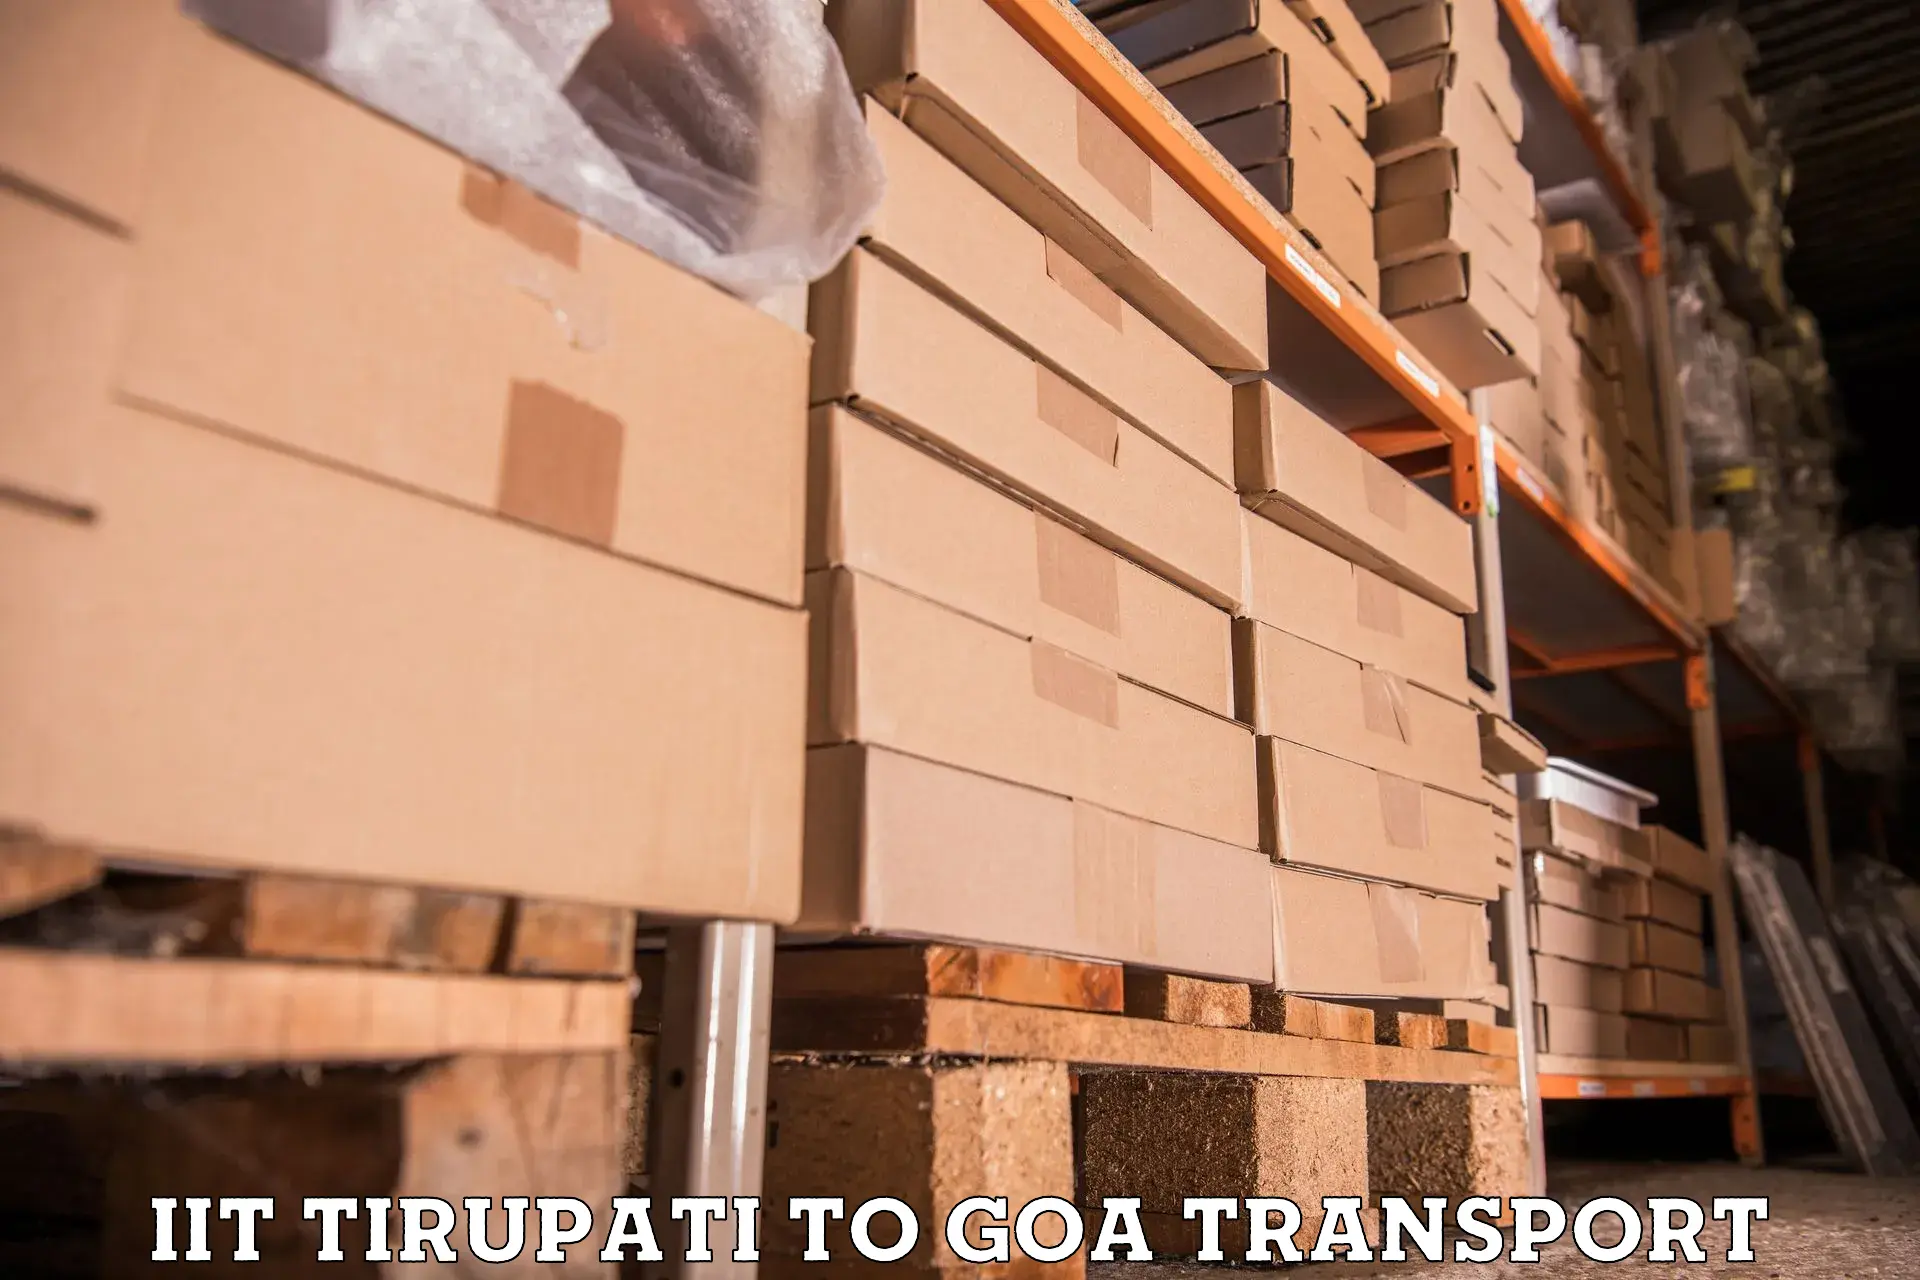 Furniture transport service IIT Tirupati to Panjim